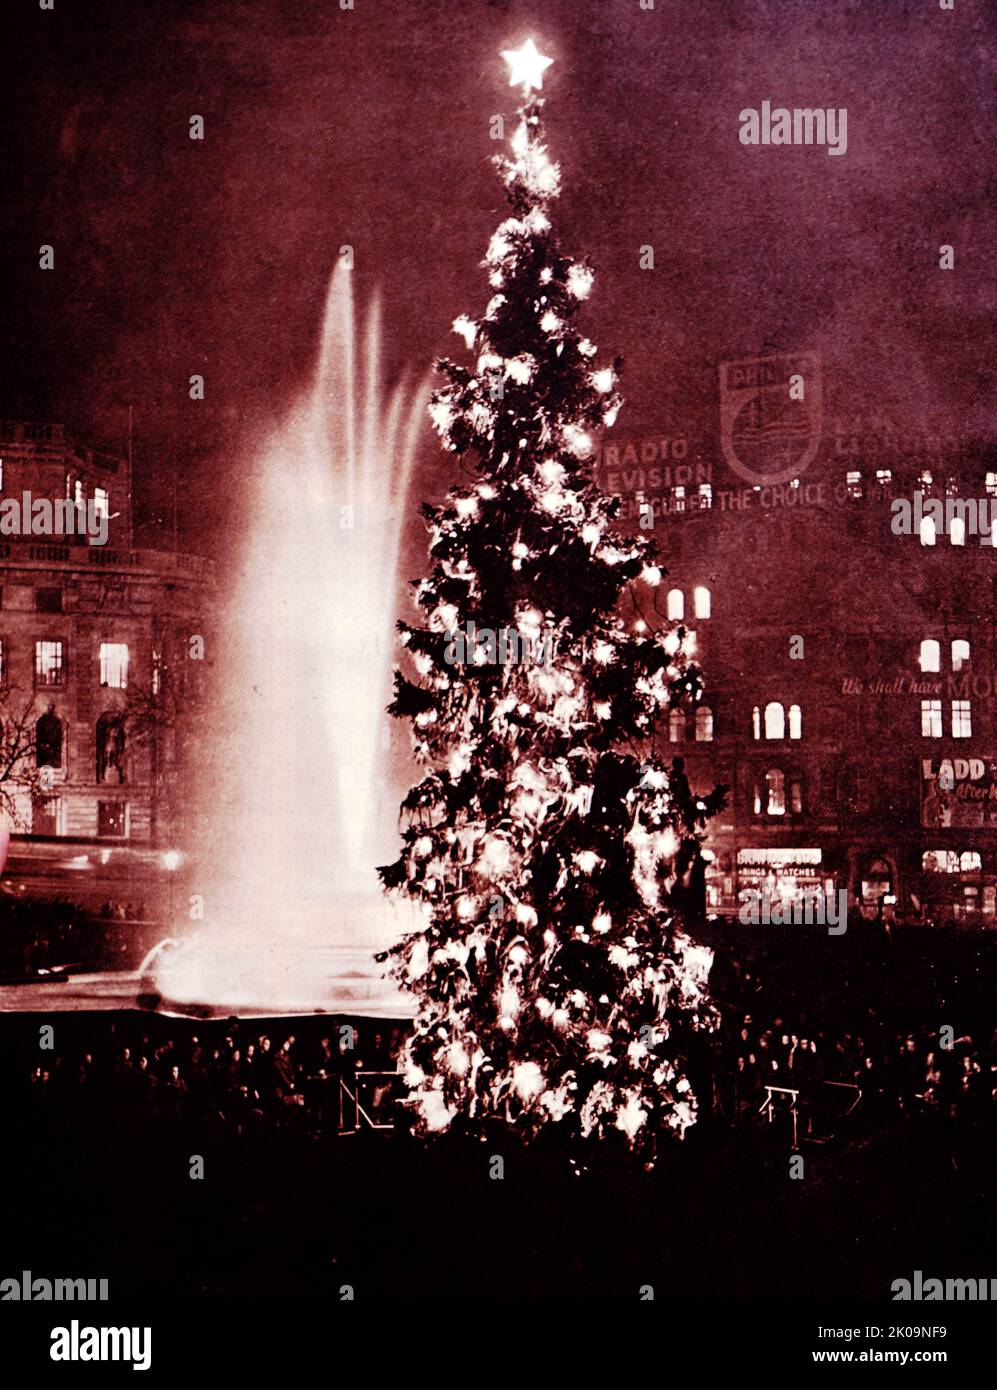 Norwegens Geste des guten Willens gegenüber London: Der riesige Weihnachtsbaum am Trafalgar Square in London. Stockfoto